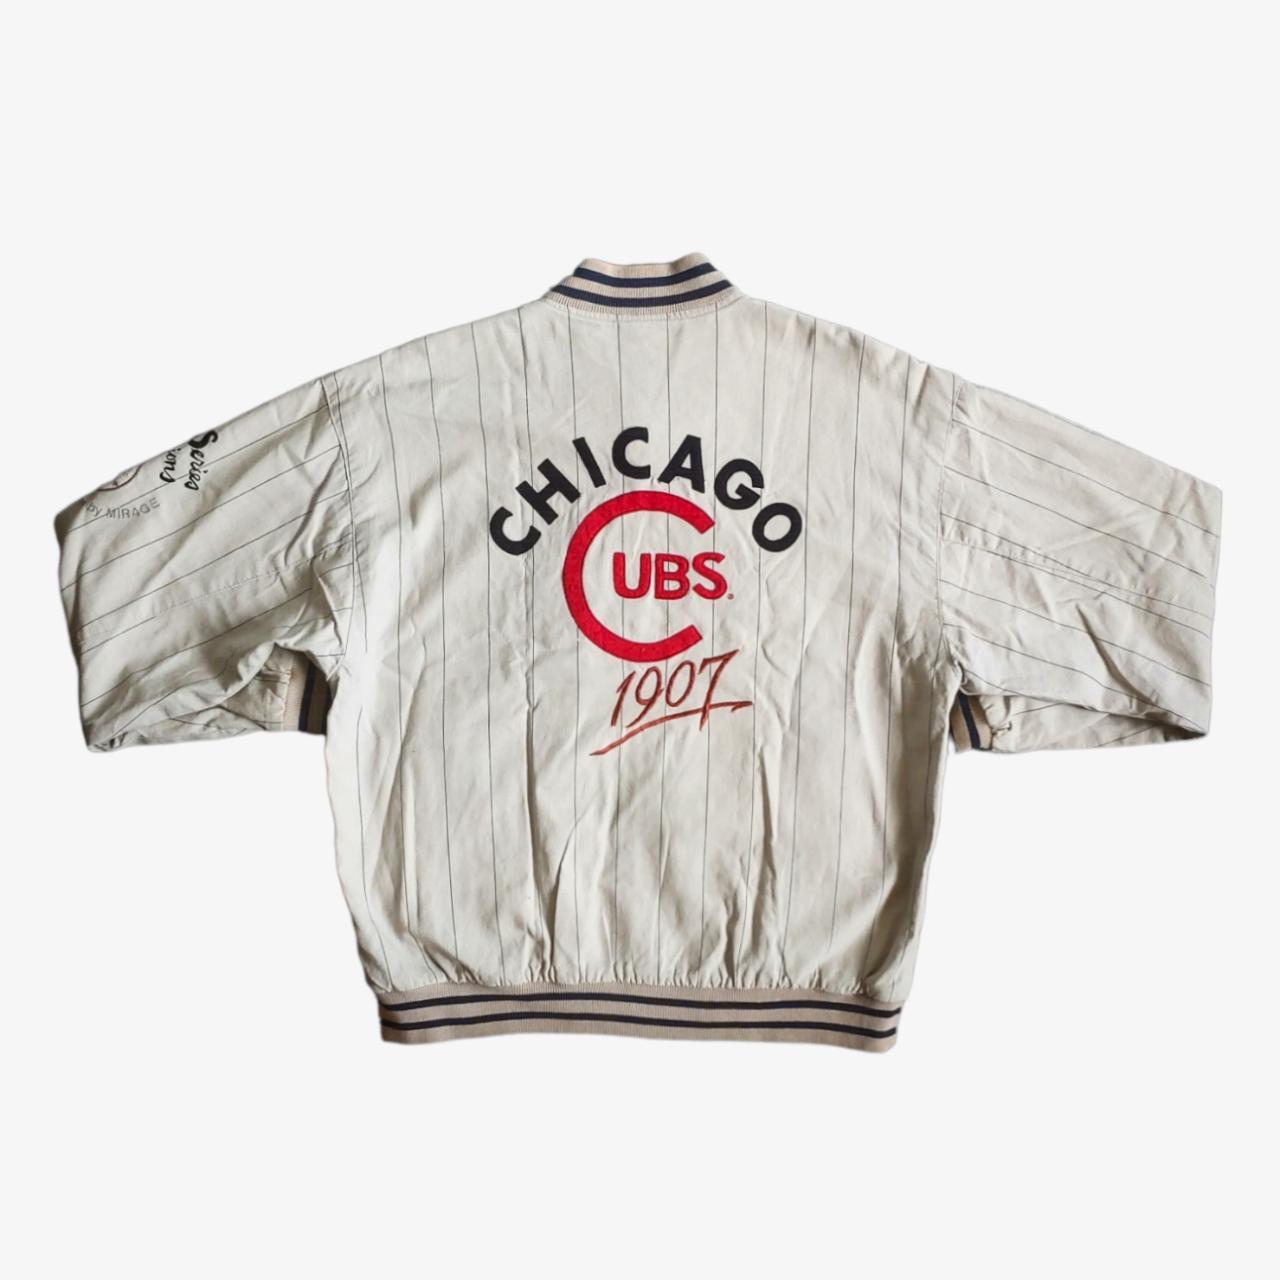 Vintage Starter 1907 MLB Chicago Cubs Baseball Jersey